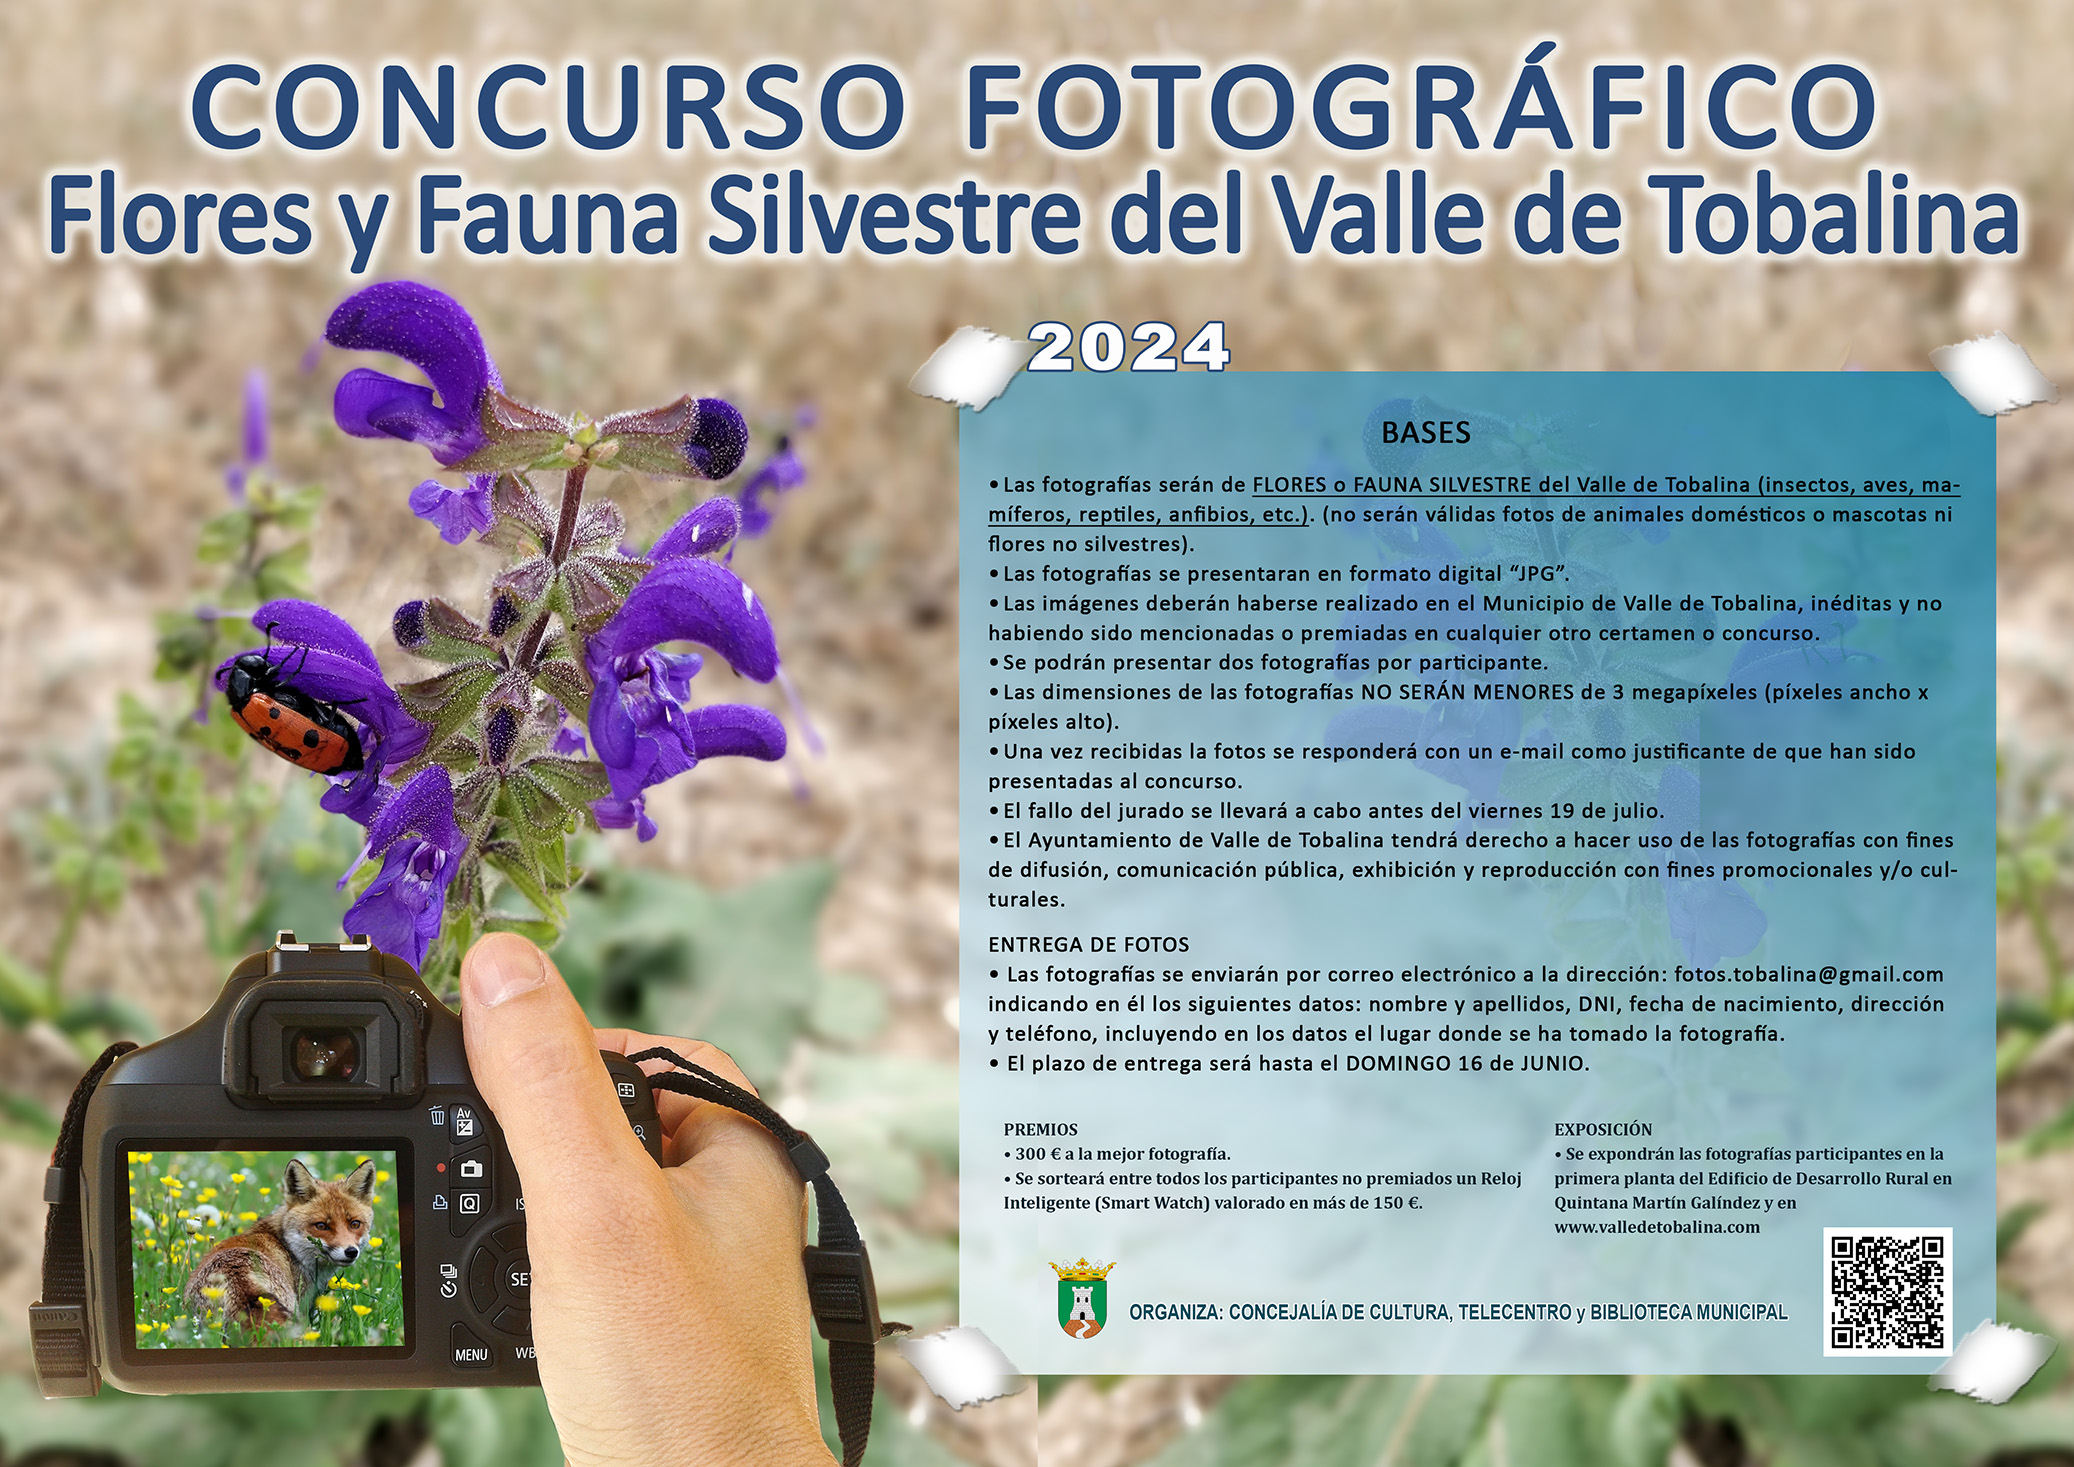 Concurso Fotográfico "Flores y Fauna Silvestre del Valle de Tobalina"